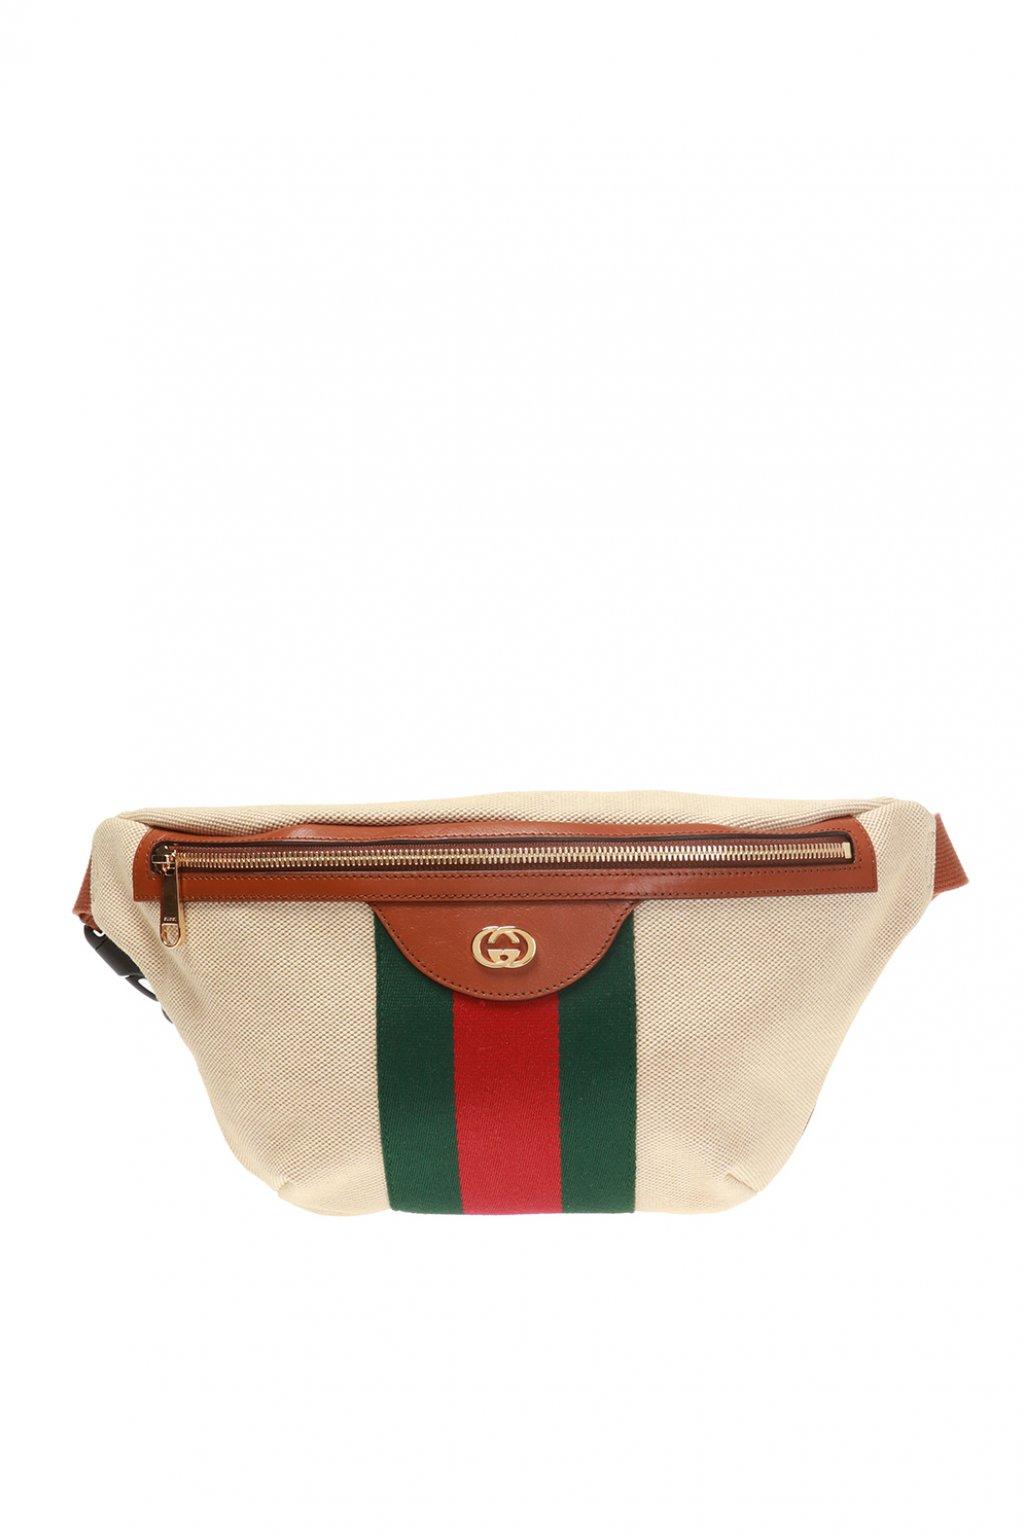 Gucci Men&#39;s Signature Web Vintage Canvas Belt Bag in Beige (Natural) for Men - Lyst